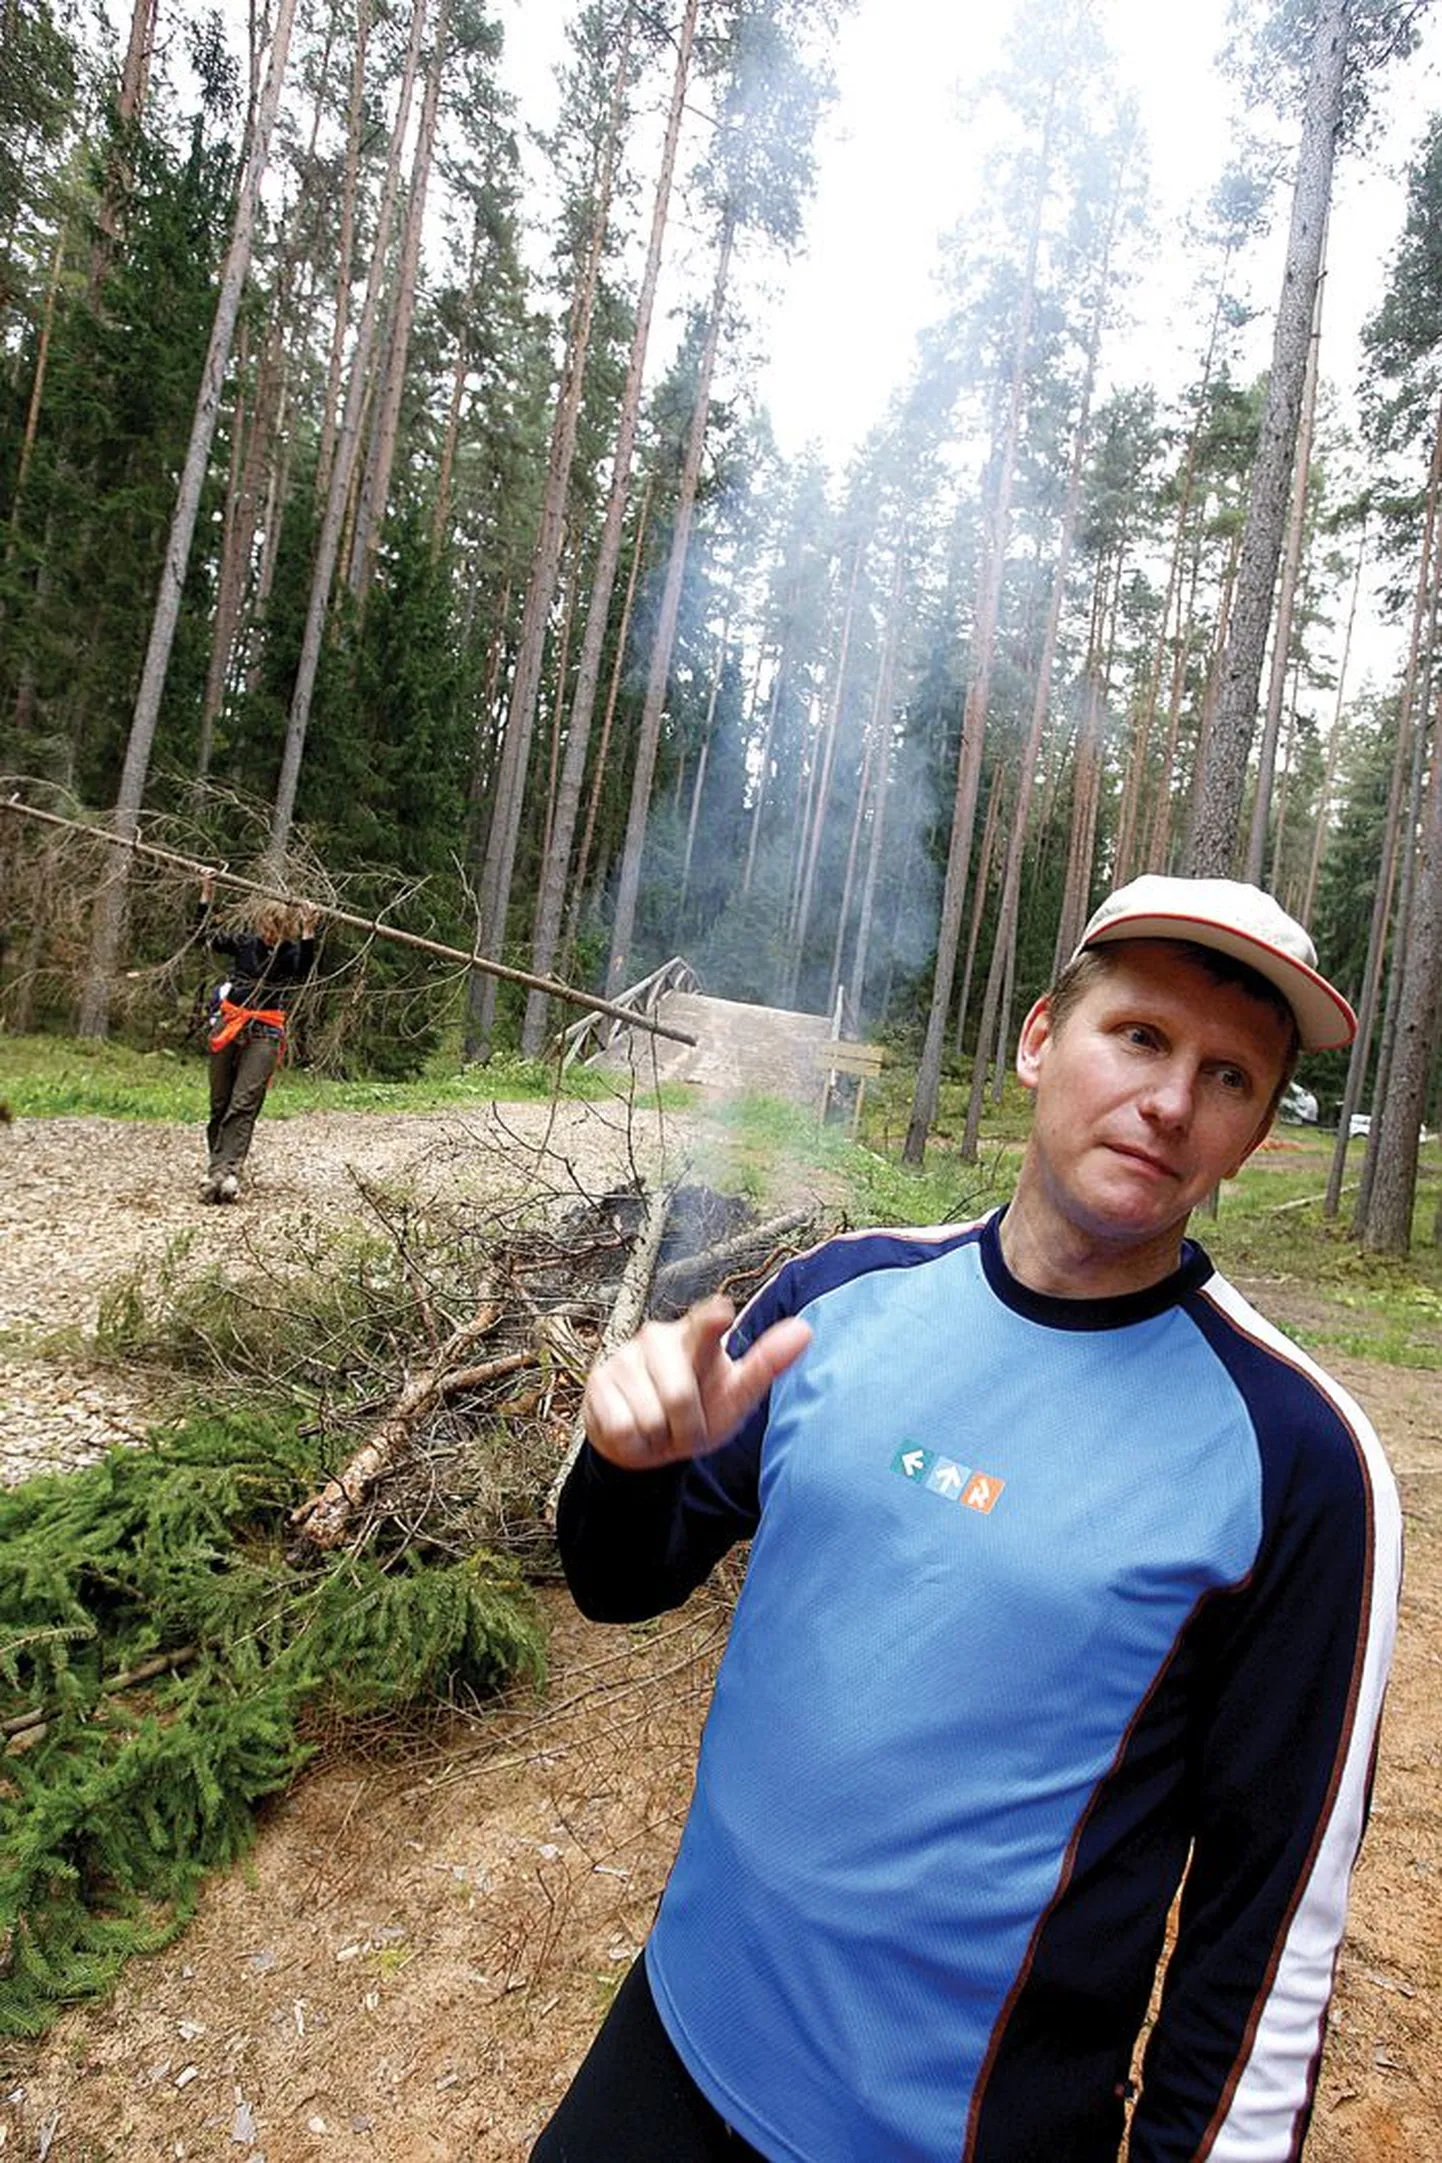 SA Eesti Terviserajad juht Jaanus Pulles on kindel, et Vooremägi on tartlastele parim ja lähim koht maastikuspordi harrastamiseks.